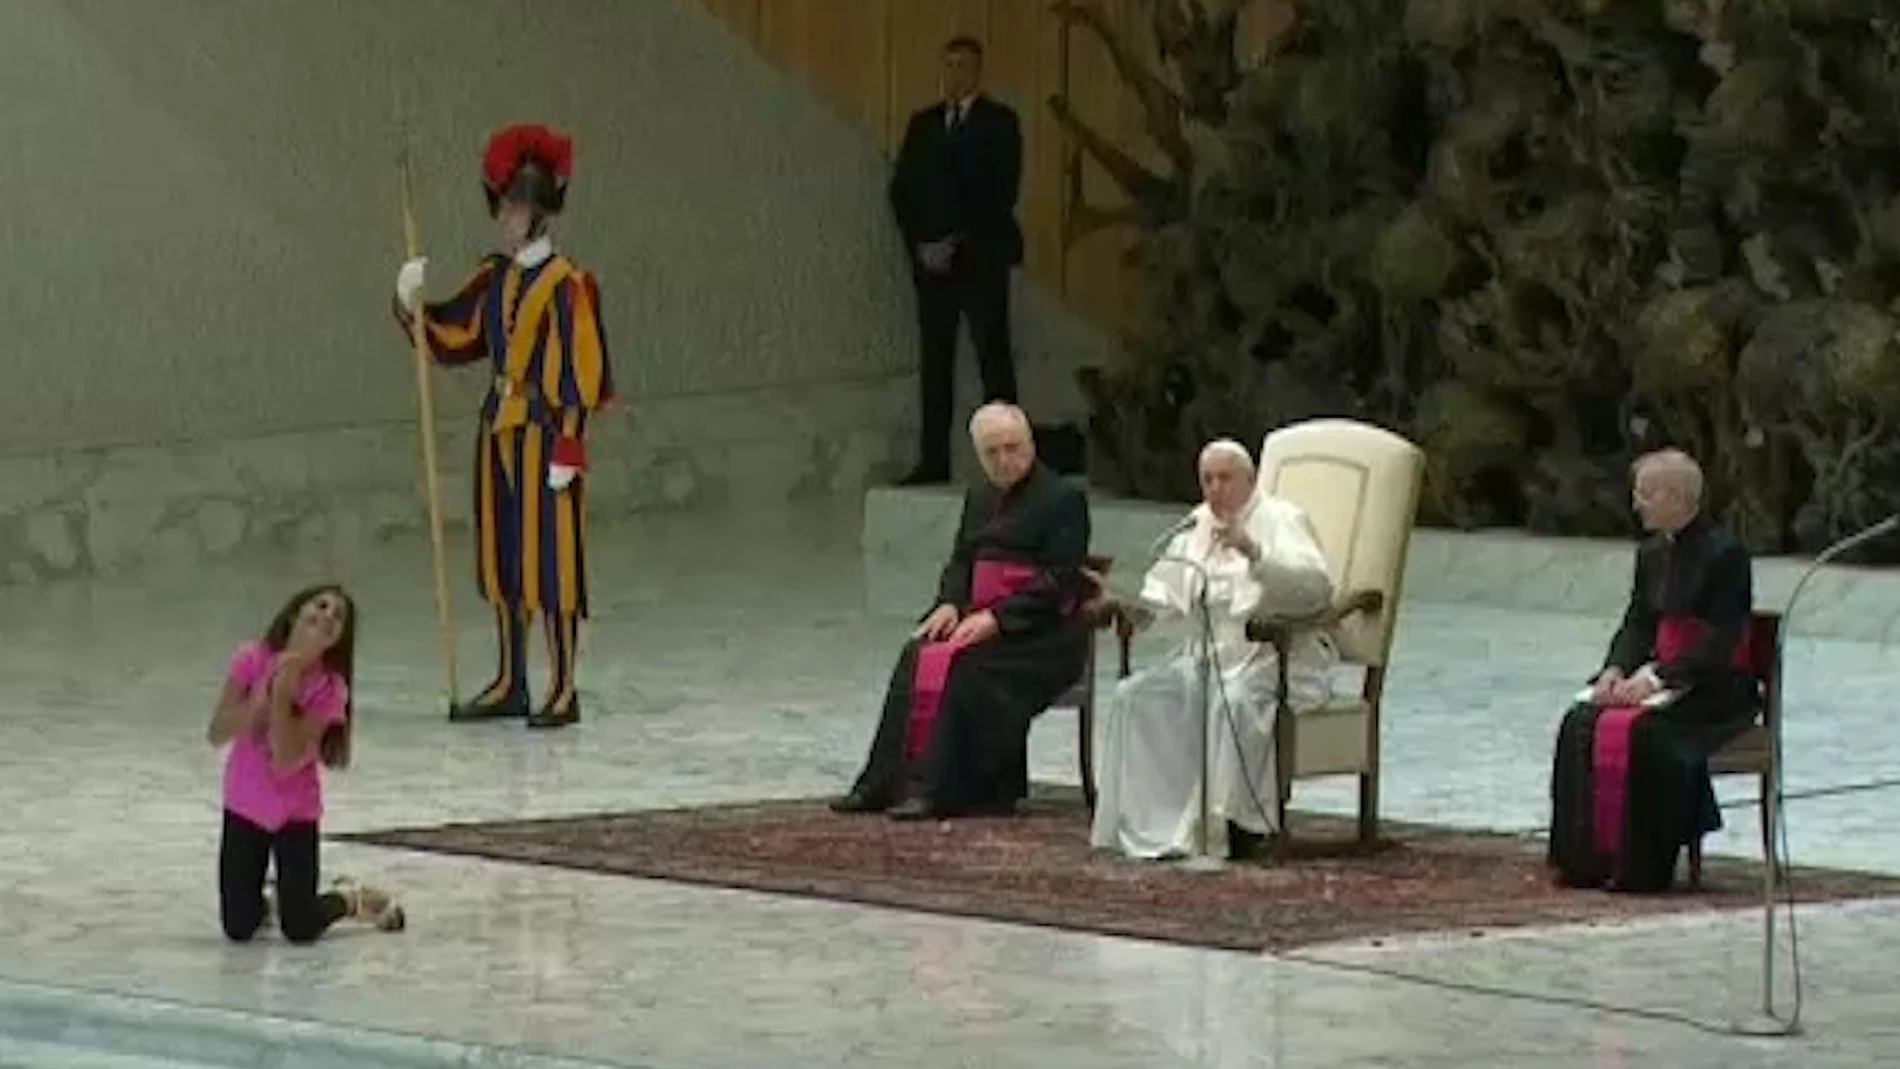 Una niña interrumpe el discurso del Papa y se pone a jugar frente a él